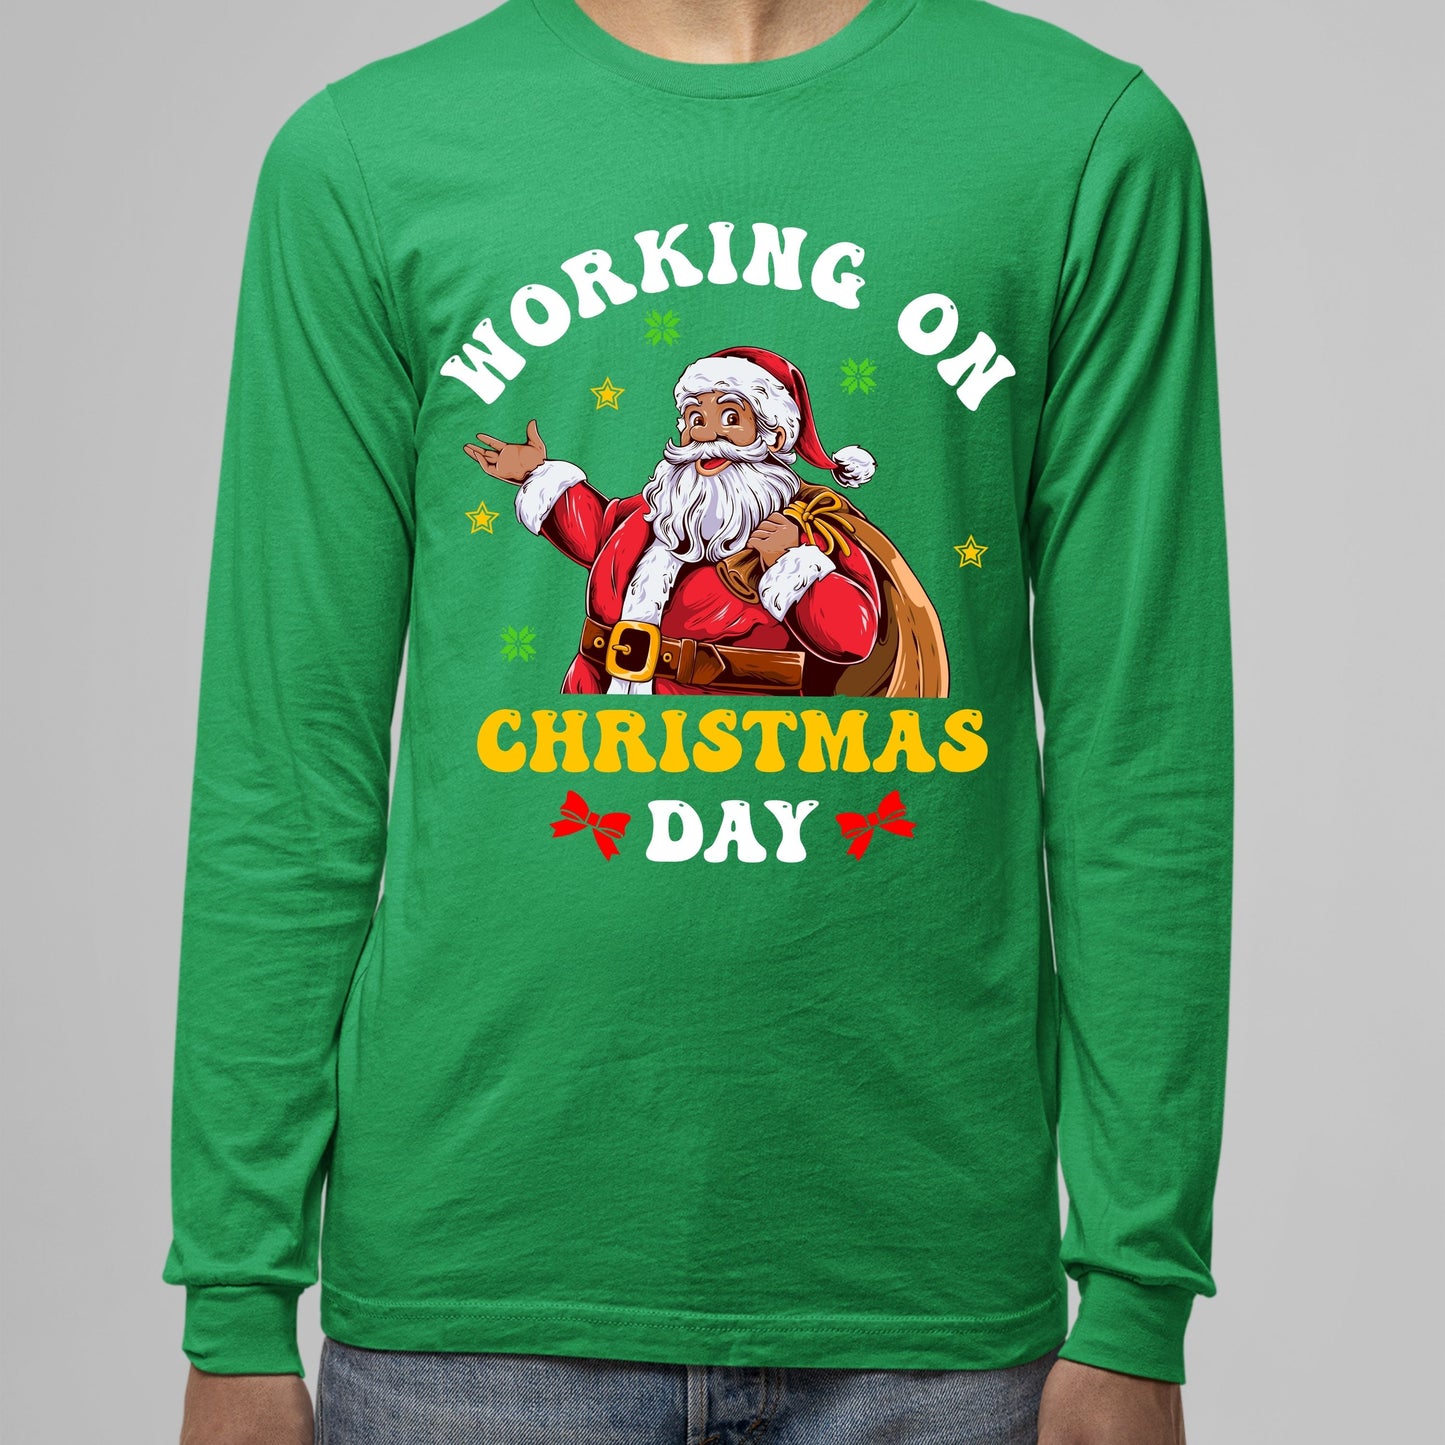 Working on Chirstmas, Men Long Sleeves, Christmas Clothing, Christmas Sweatshirts, Christmas Shirts, Christmas Decor, Christmas